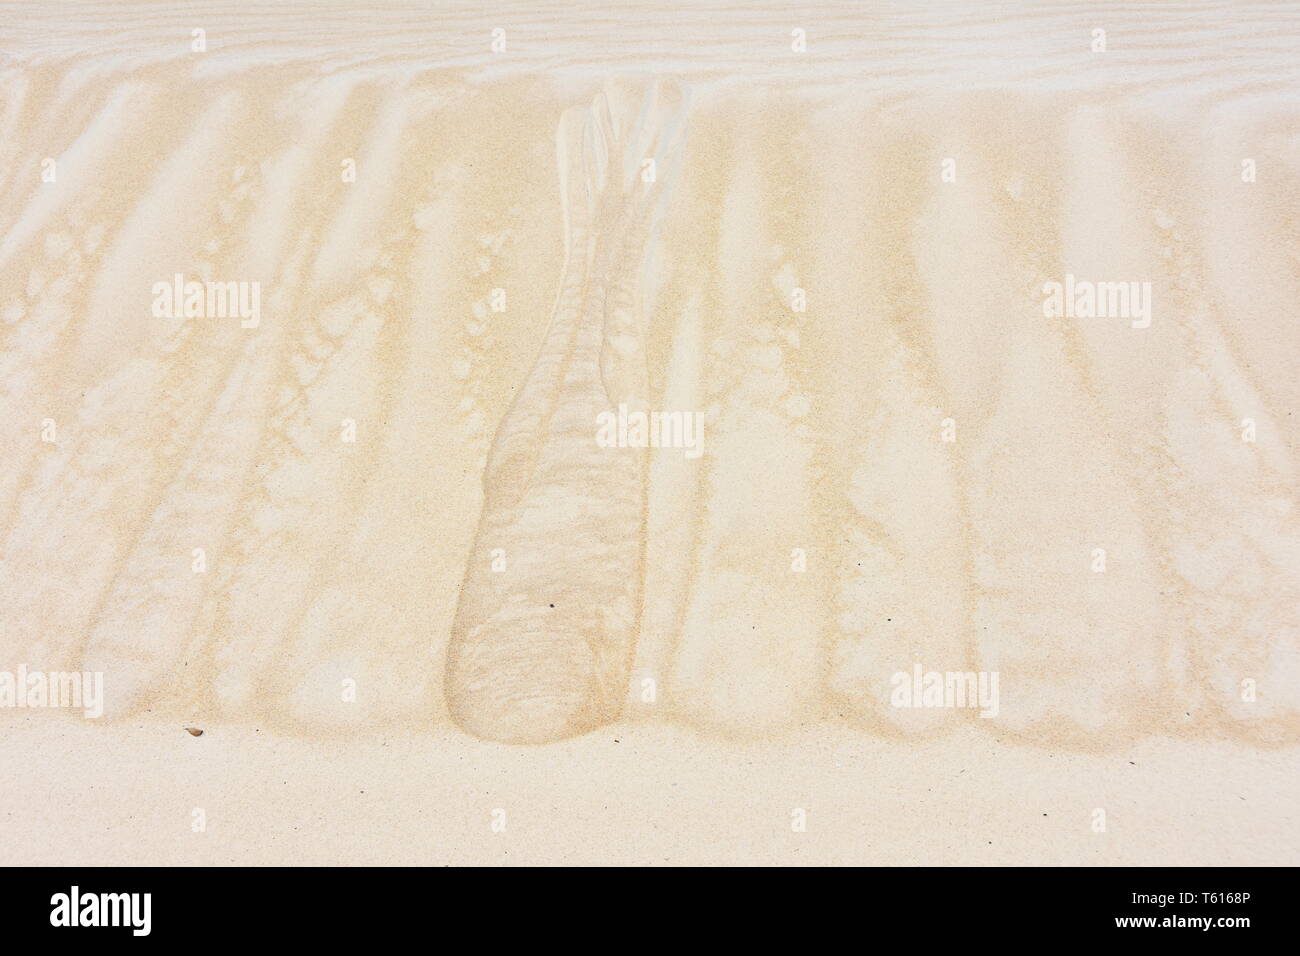 Gestreifte welligkeit Muster auf einer Sanddüne Stockfoto